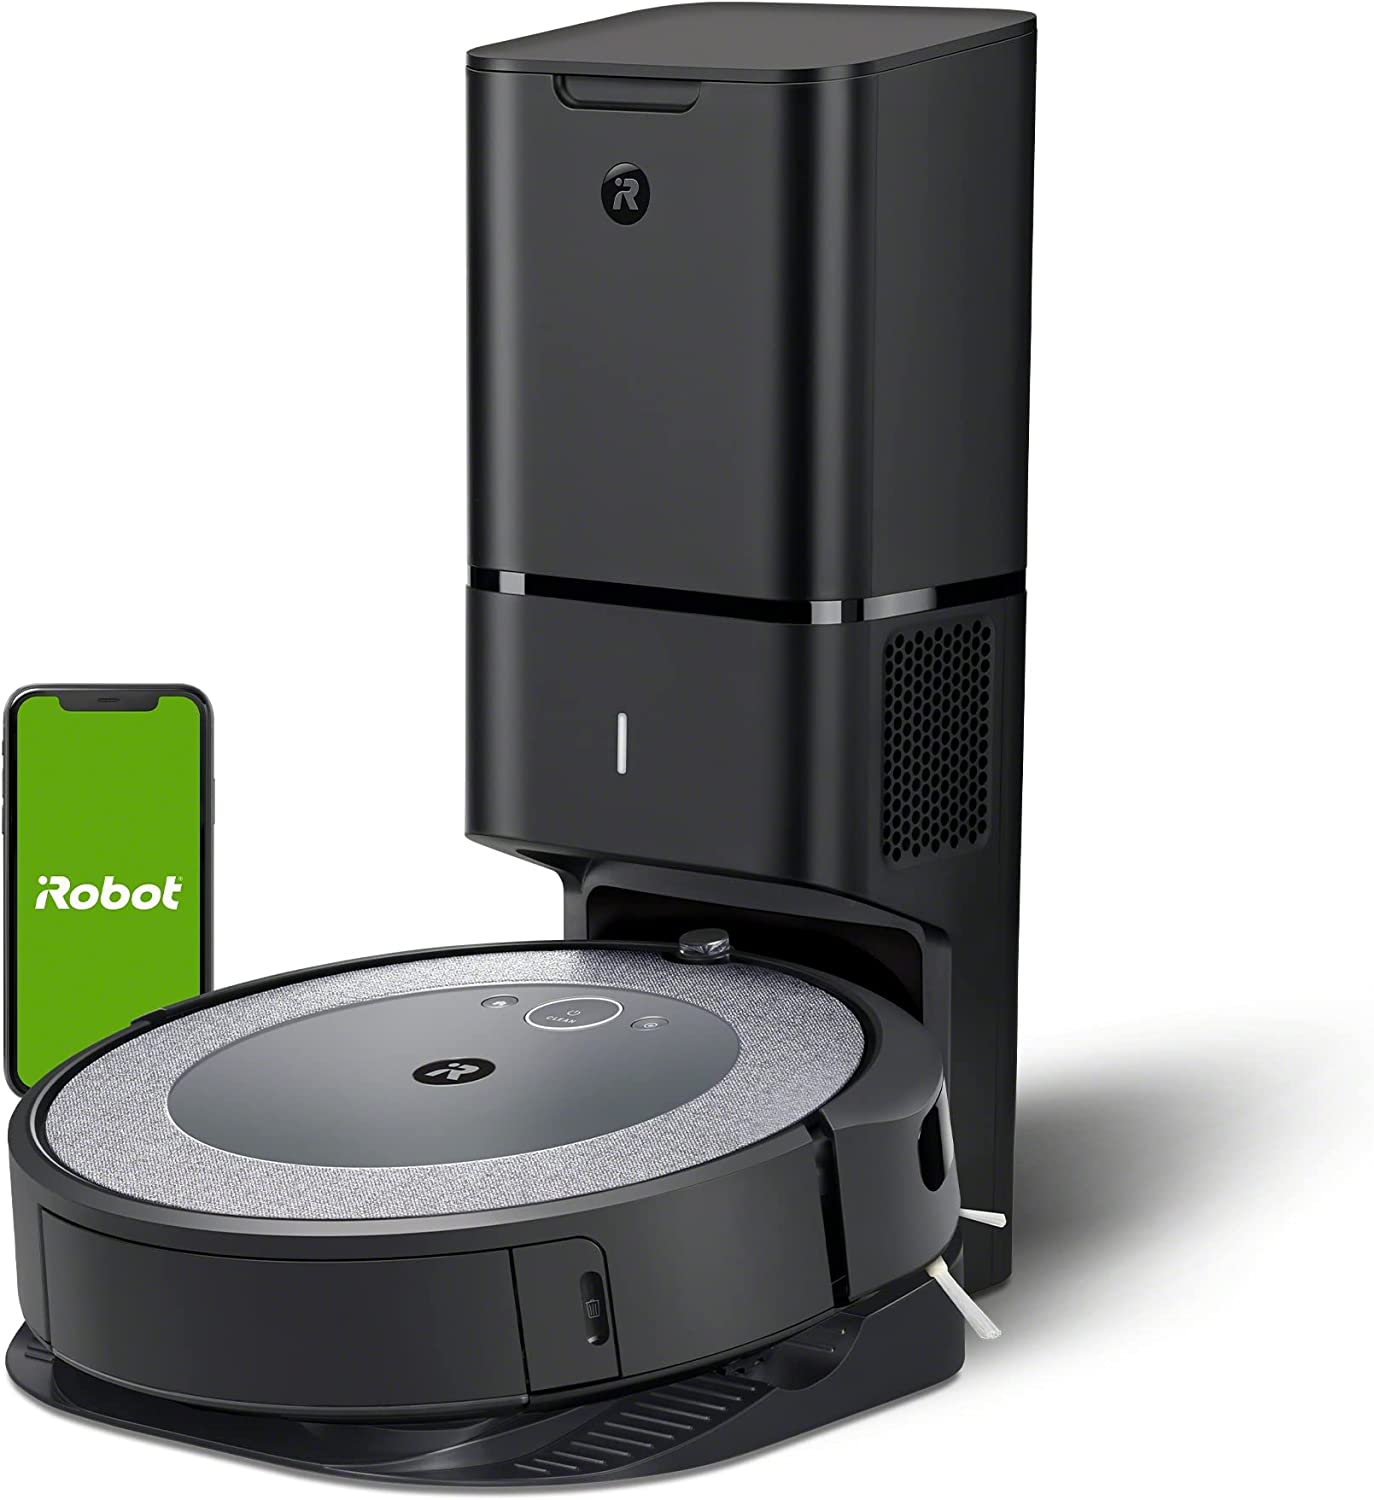 Roomba i5+ vs Roomba i3+ vs Roomba i7+